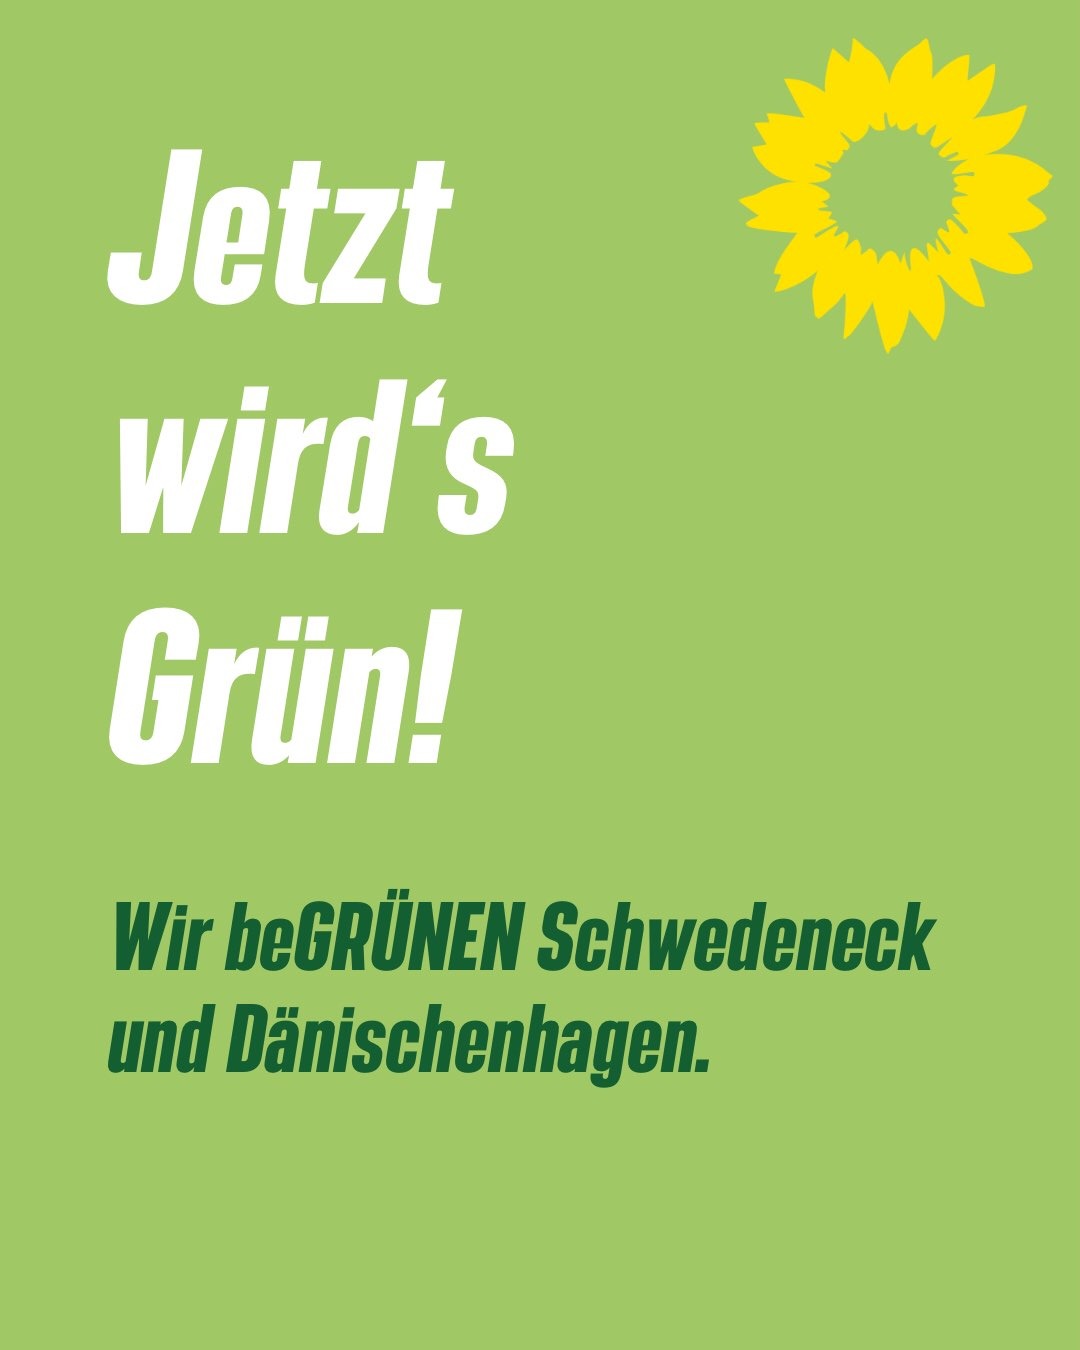 Beitragsbild mit dem Text "Jetzt wird's Grün! Wie beGRÜNEN Schwedeneck und Dänischenhagen" und einer Sonnenbliume